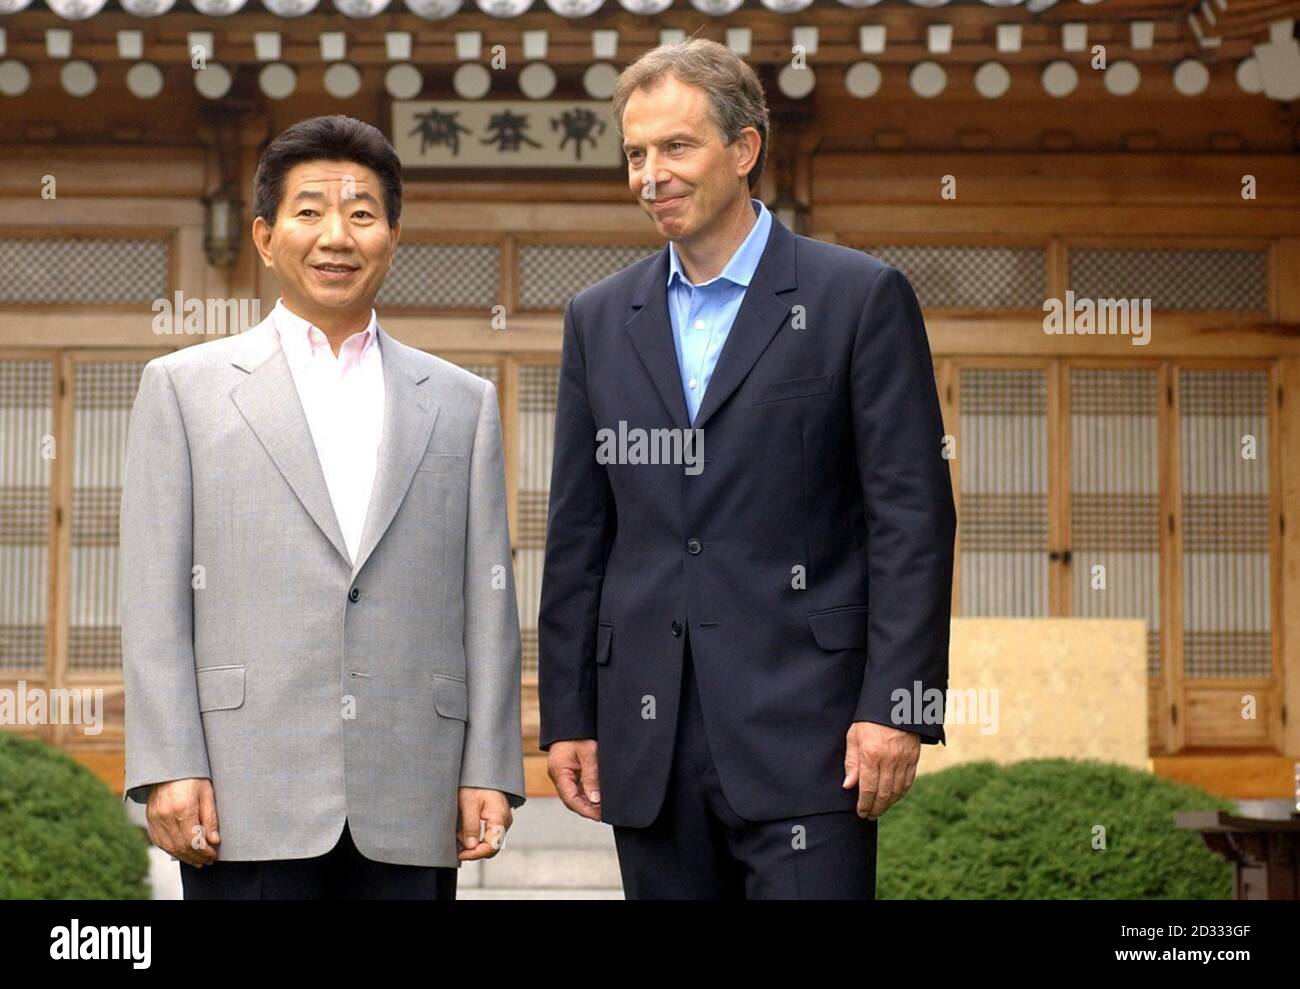 Der britische Premierminister Tony Blair trifft sich mit dem südkoreanischen Präsidenten Roh im Blauen Haus, der Präsidentenresidenz in Seoul, während seines einwöchigen Besuchs im Fernen Osten mit Japan, Südkorea, China und Hongkong. 01/12/2004 Präsident Roh beginnt einen zweitägigen Staatsbesuch in Großbritannien, Mittwoch, 1. Dezember 2004. Er wird heute Abend an einem Staatsbankett im Buckingham Palace teilnehmen und morgen Tony Blair treffen. Stockfoto